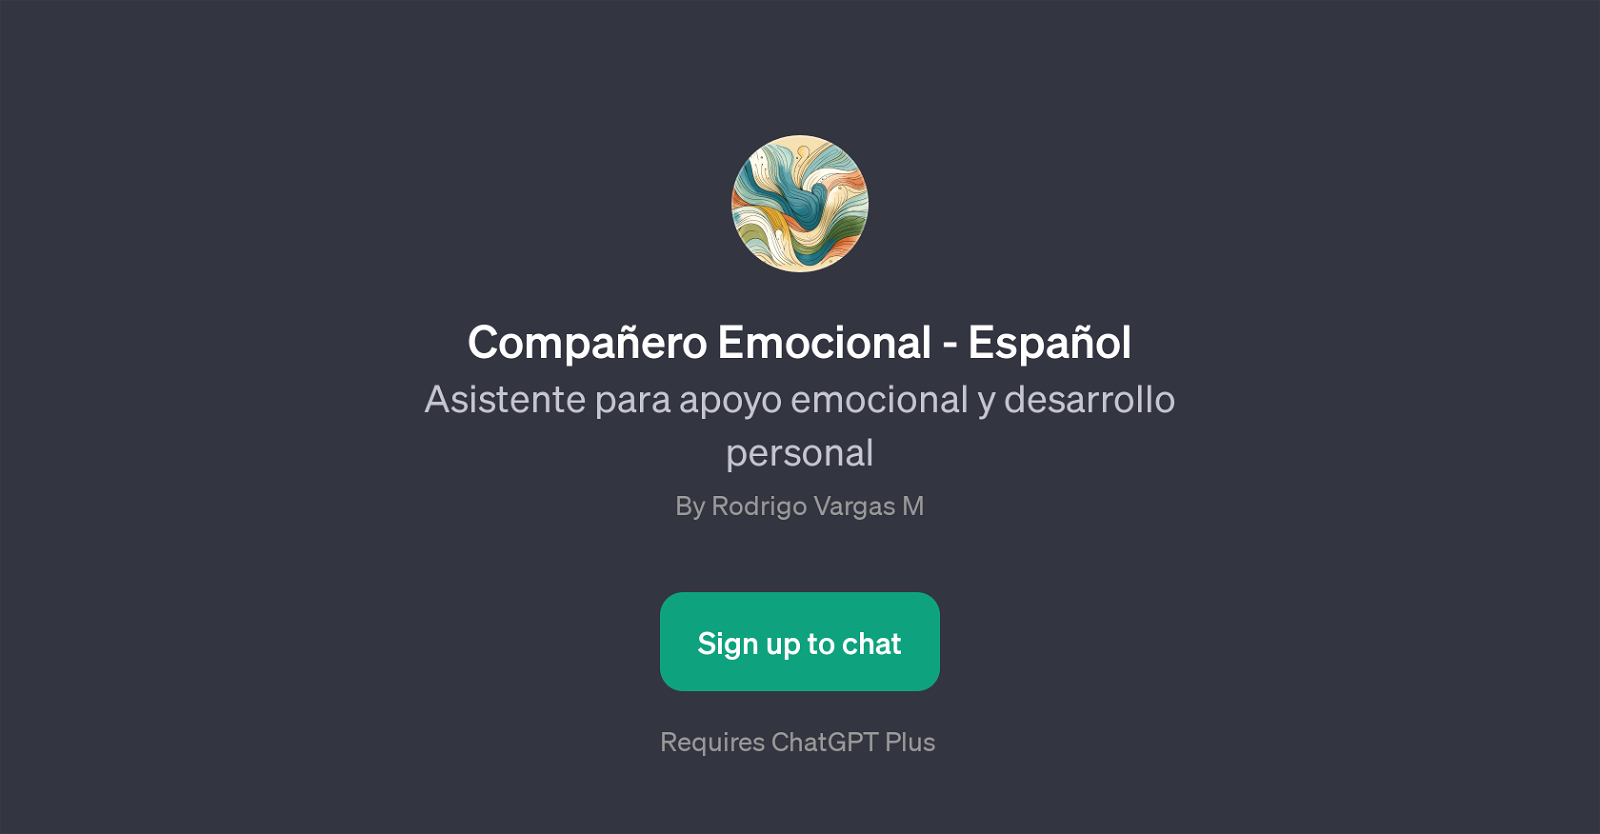 Compaero Emocional - Espaol website